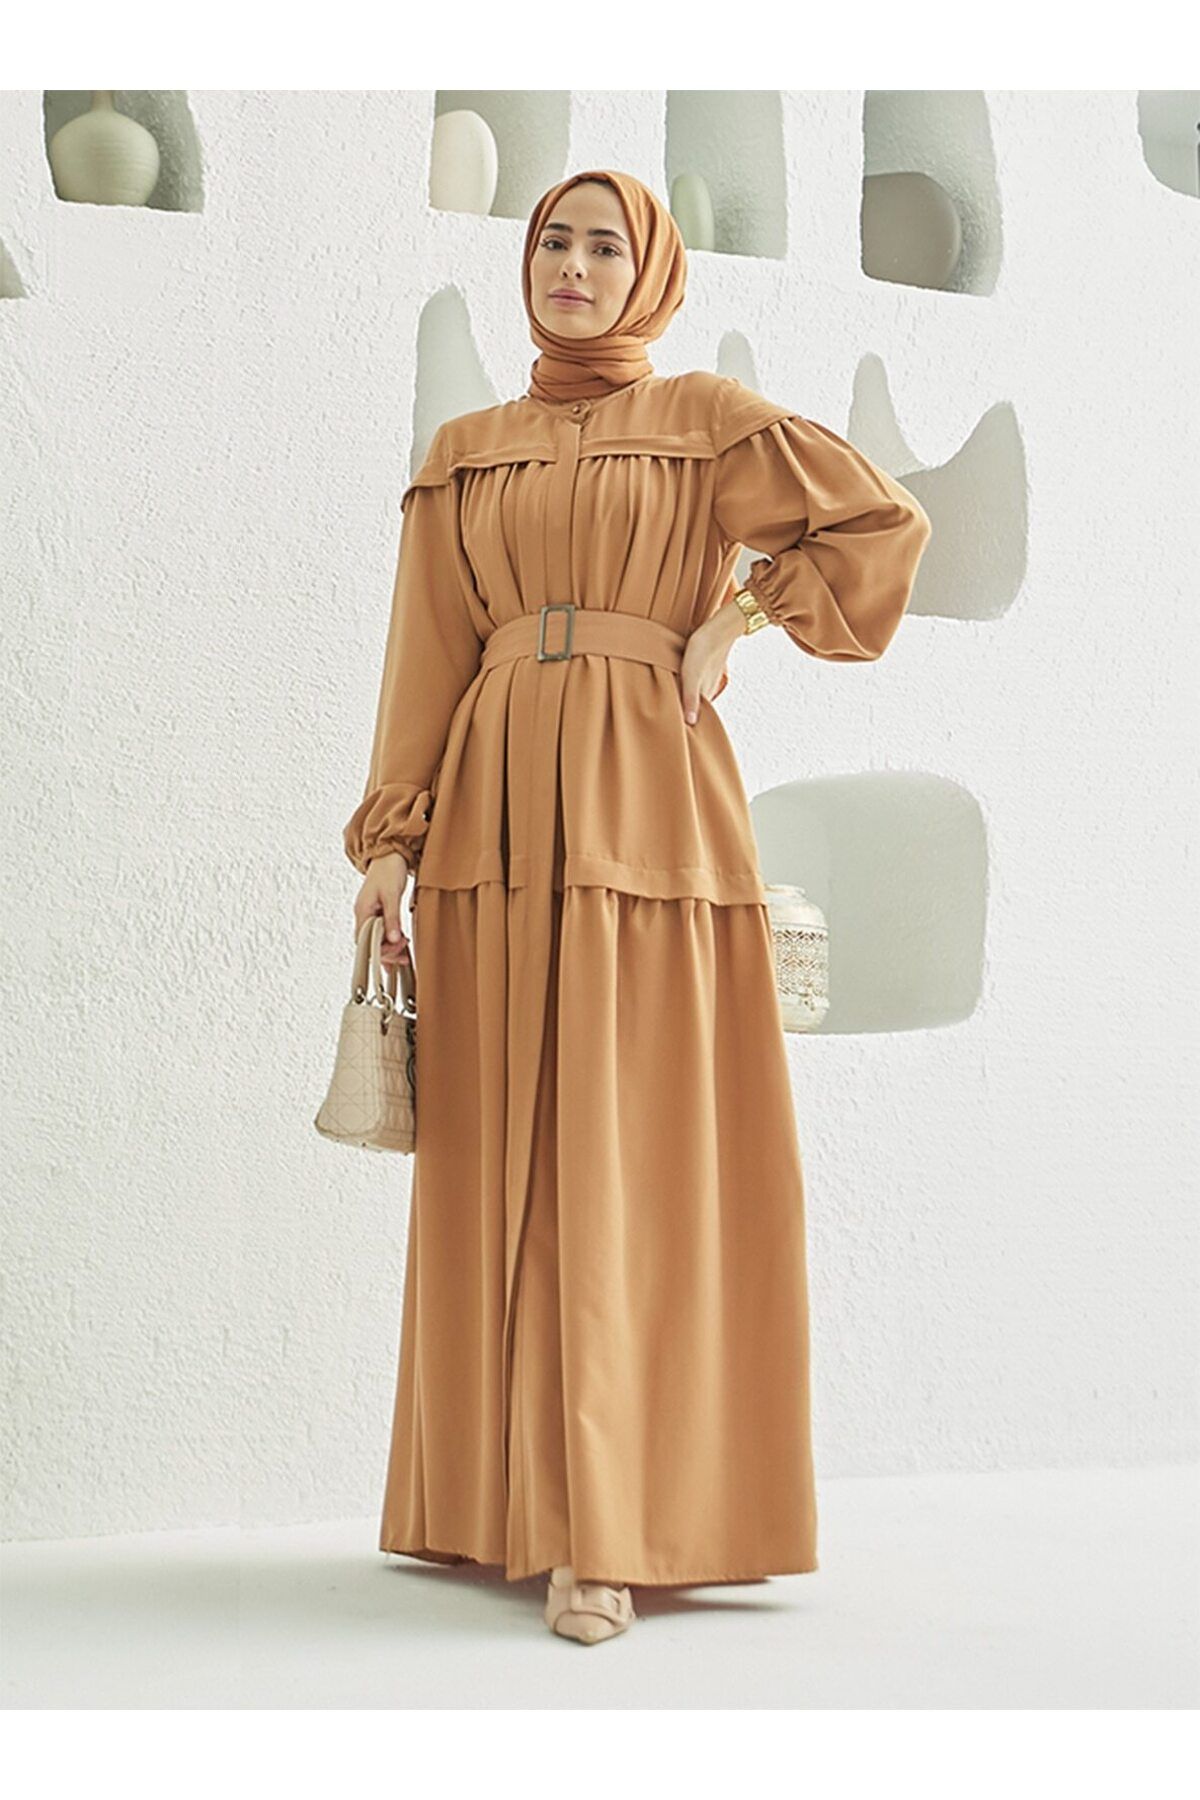 Neways Tokalı Kemer Detaylı Tesettür Elbise - Camel - Neways